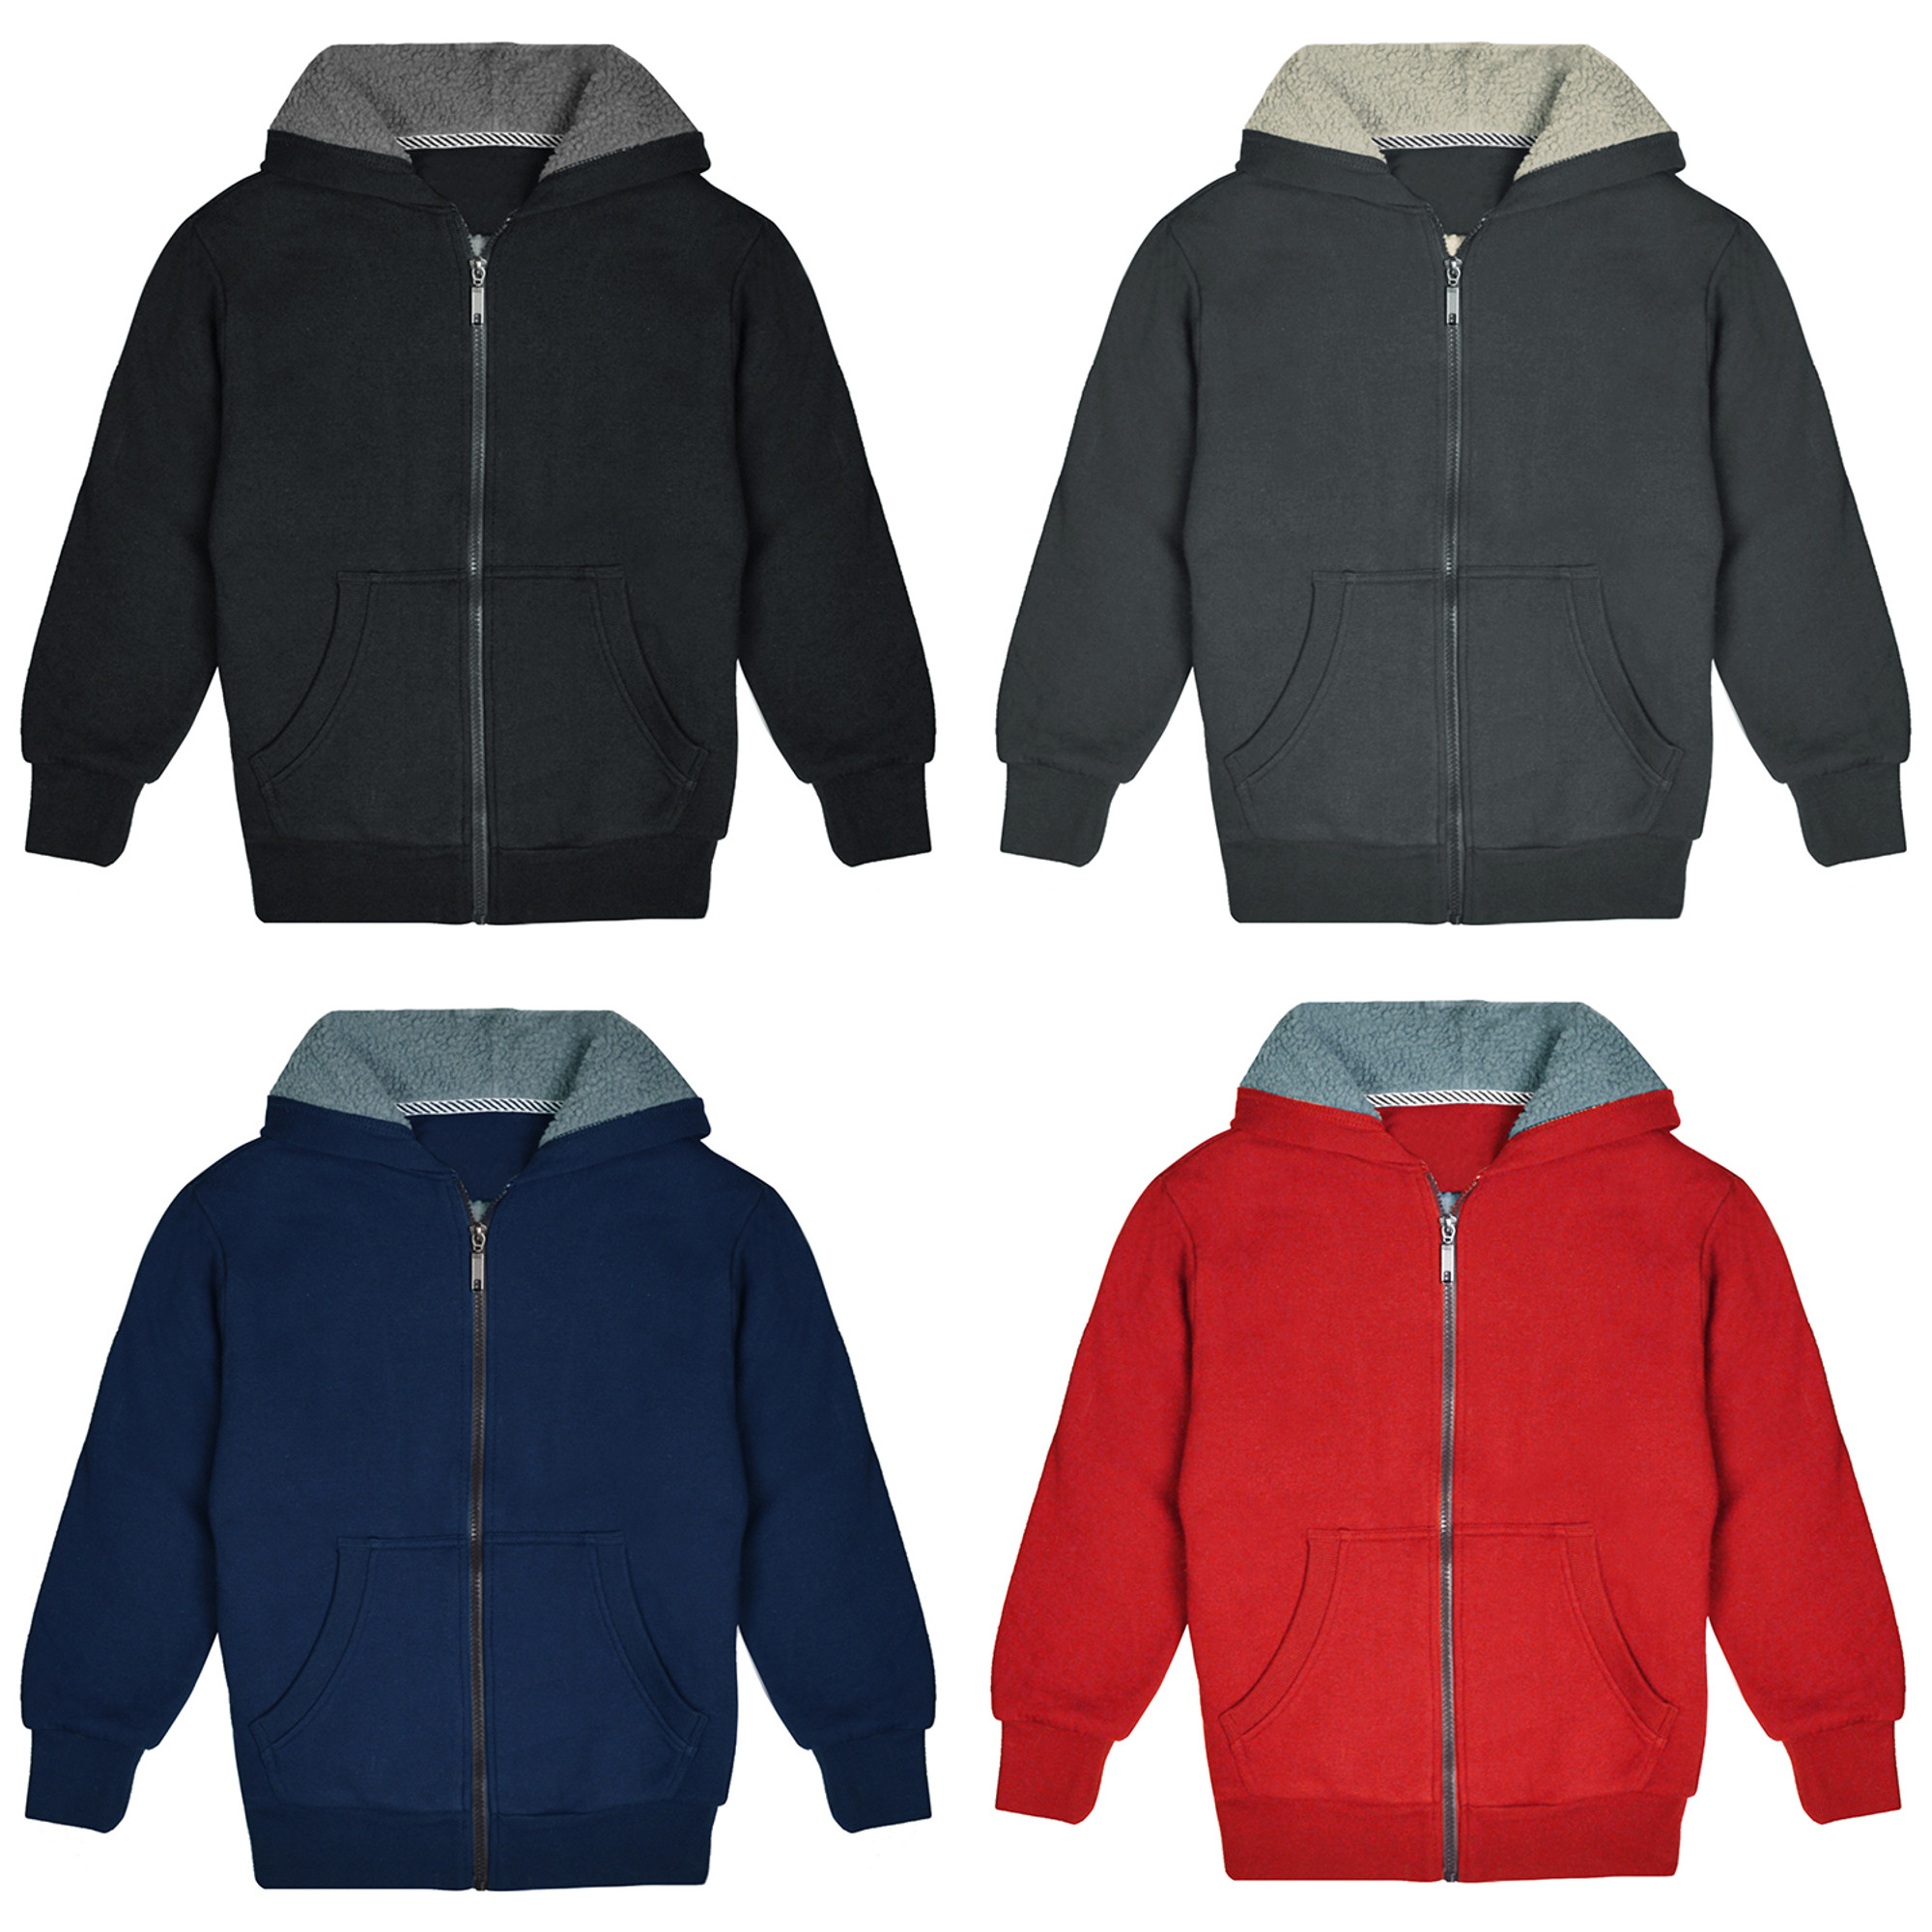 Alta Men's Casual Fleece Lined Full-Zip Sweater Jacket